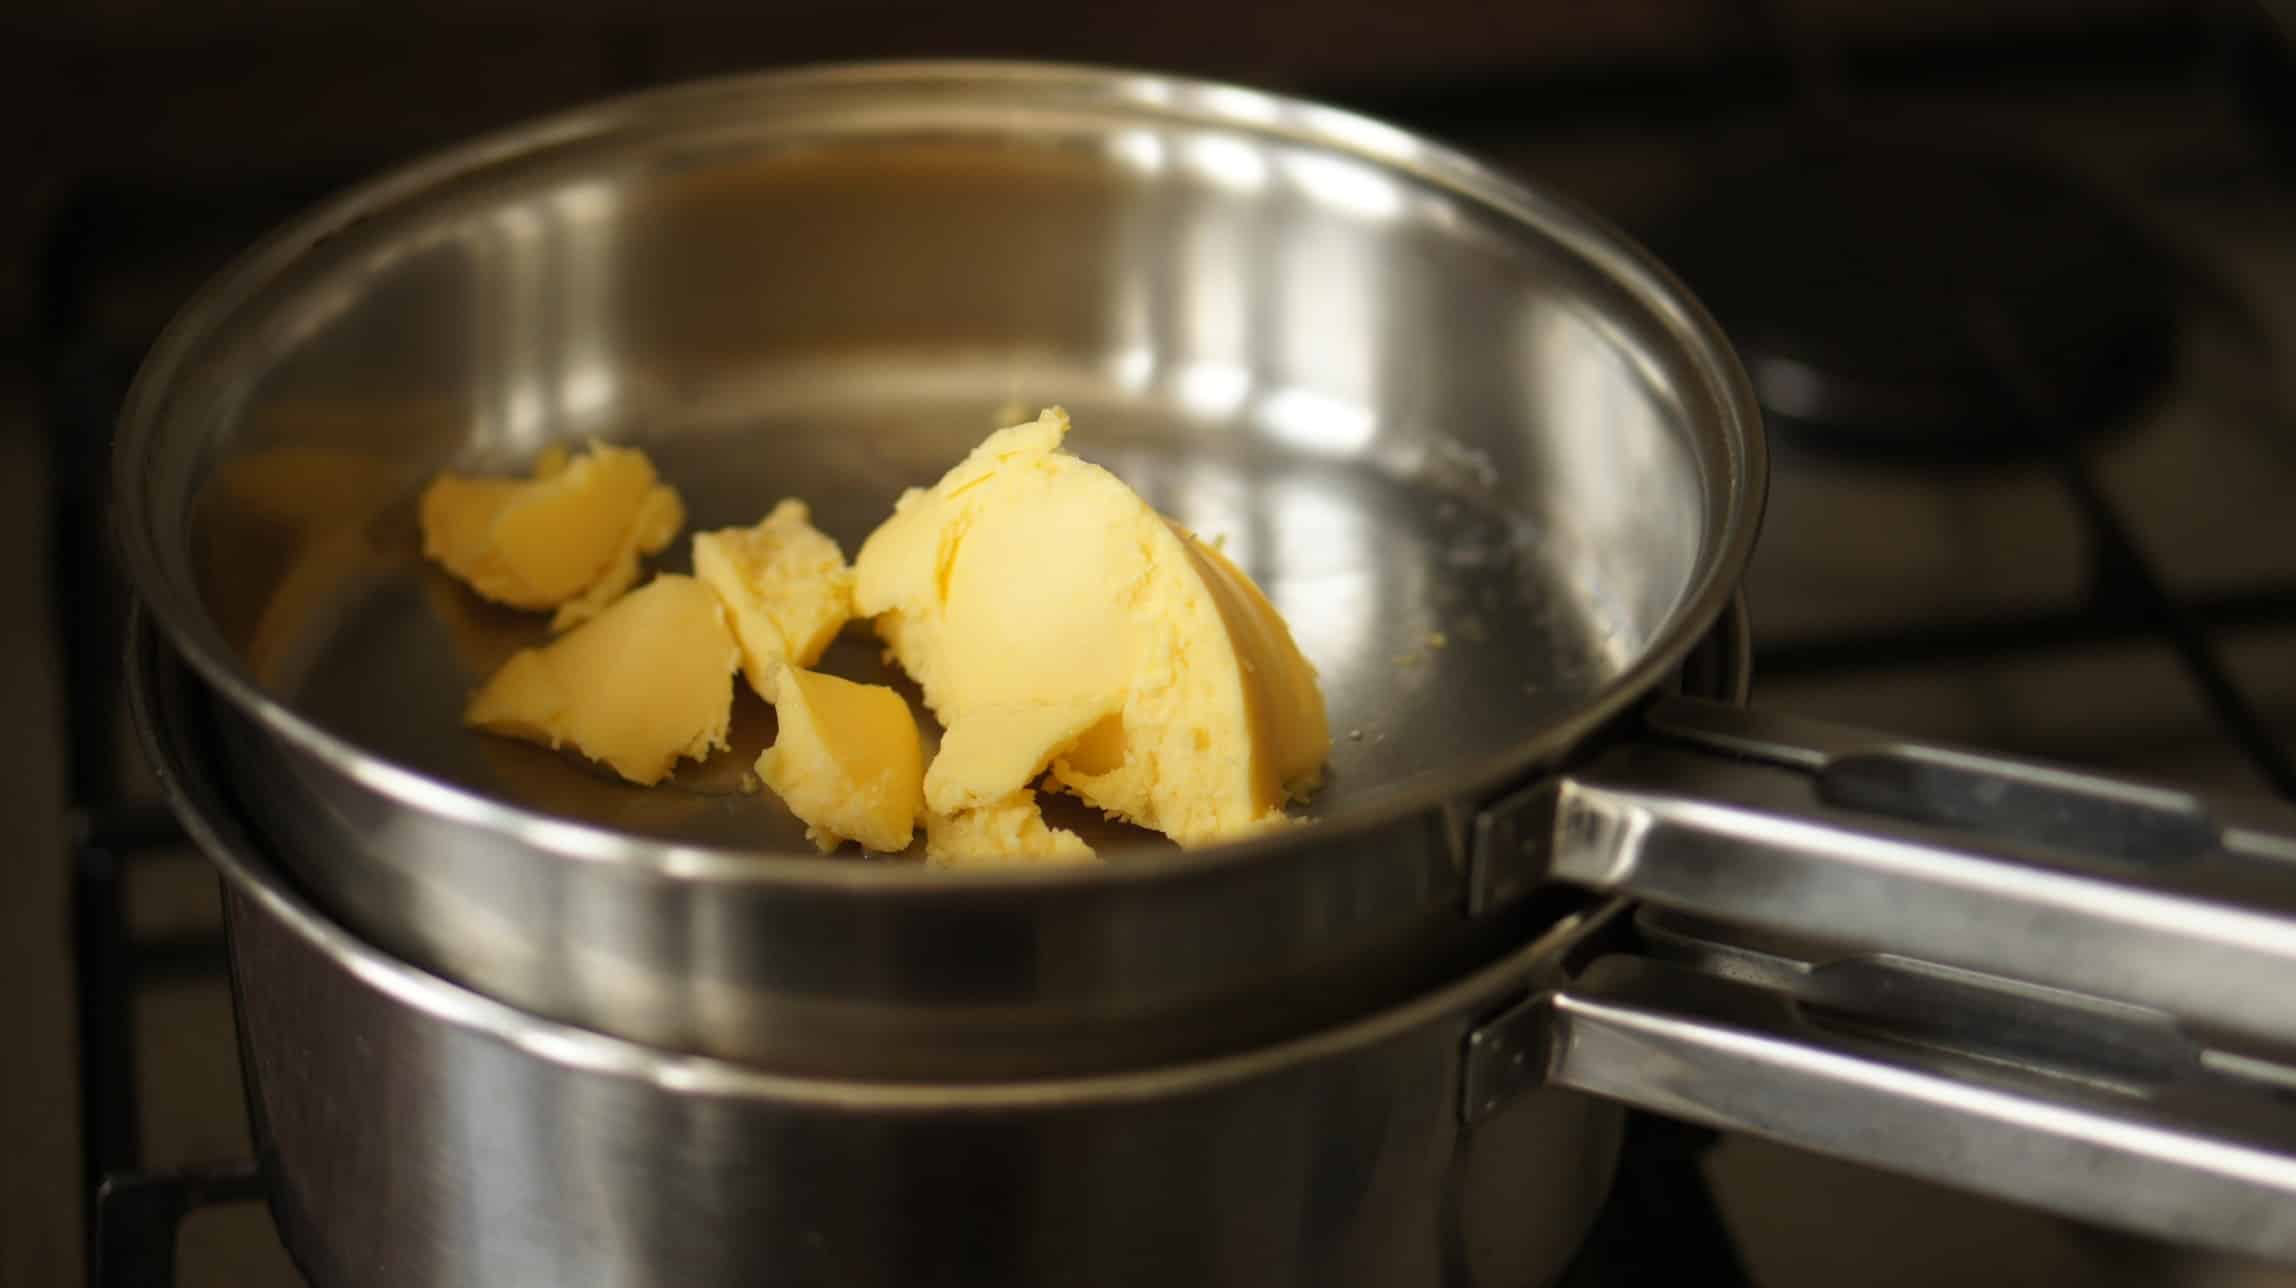 Derretendo a manteiga para fazer a manteiga clarificada